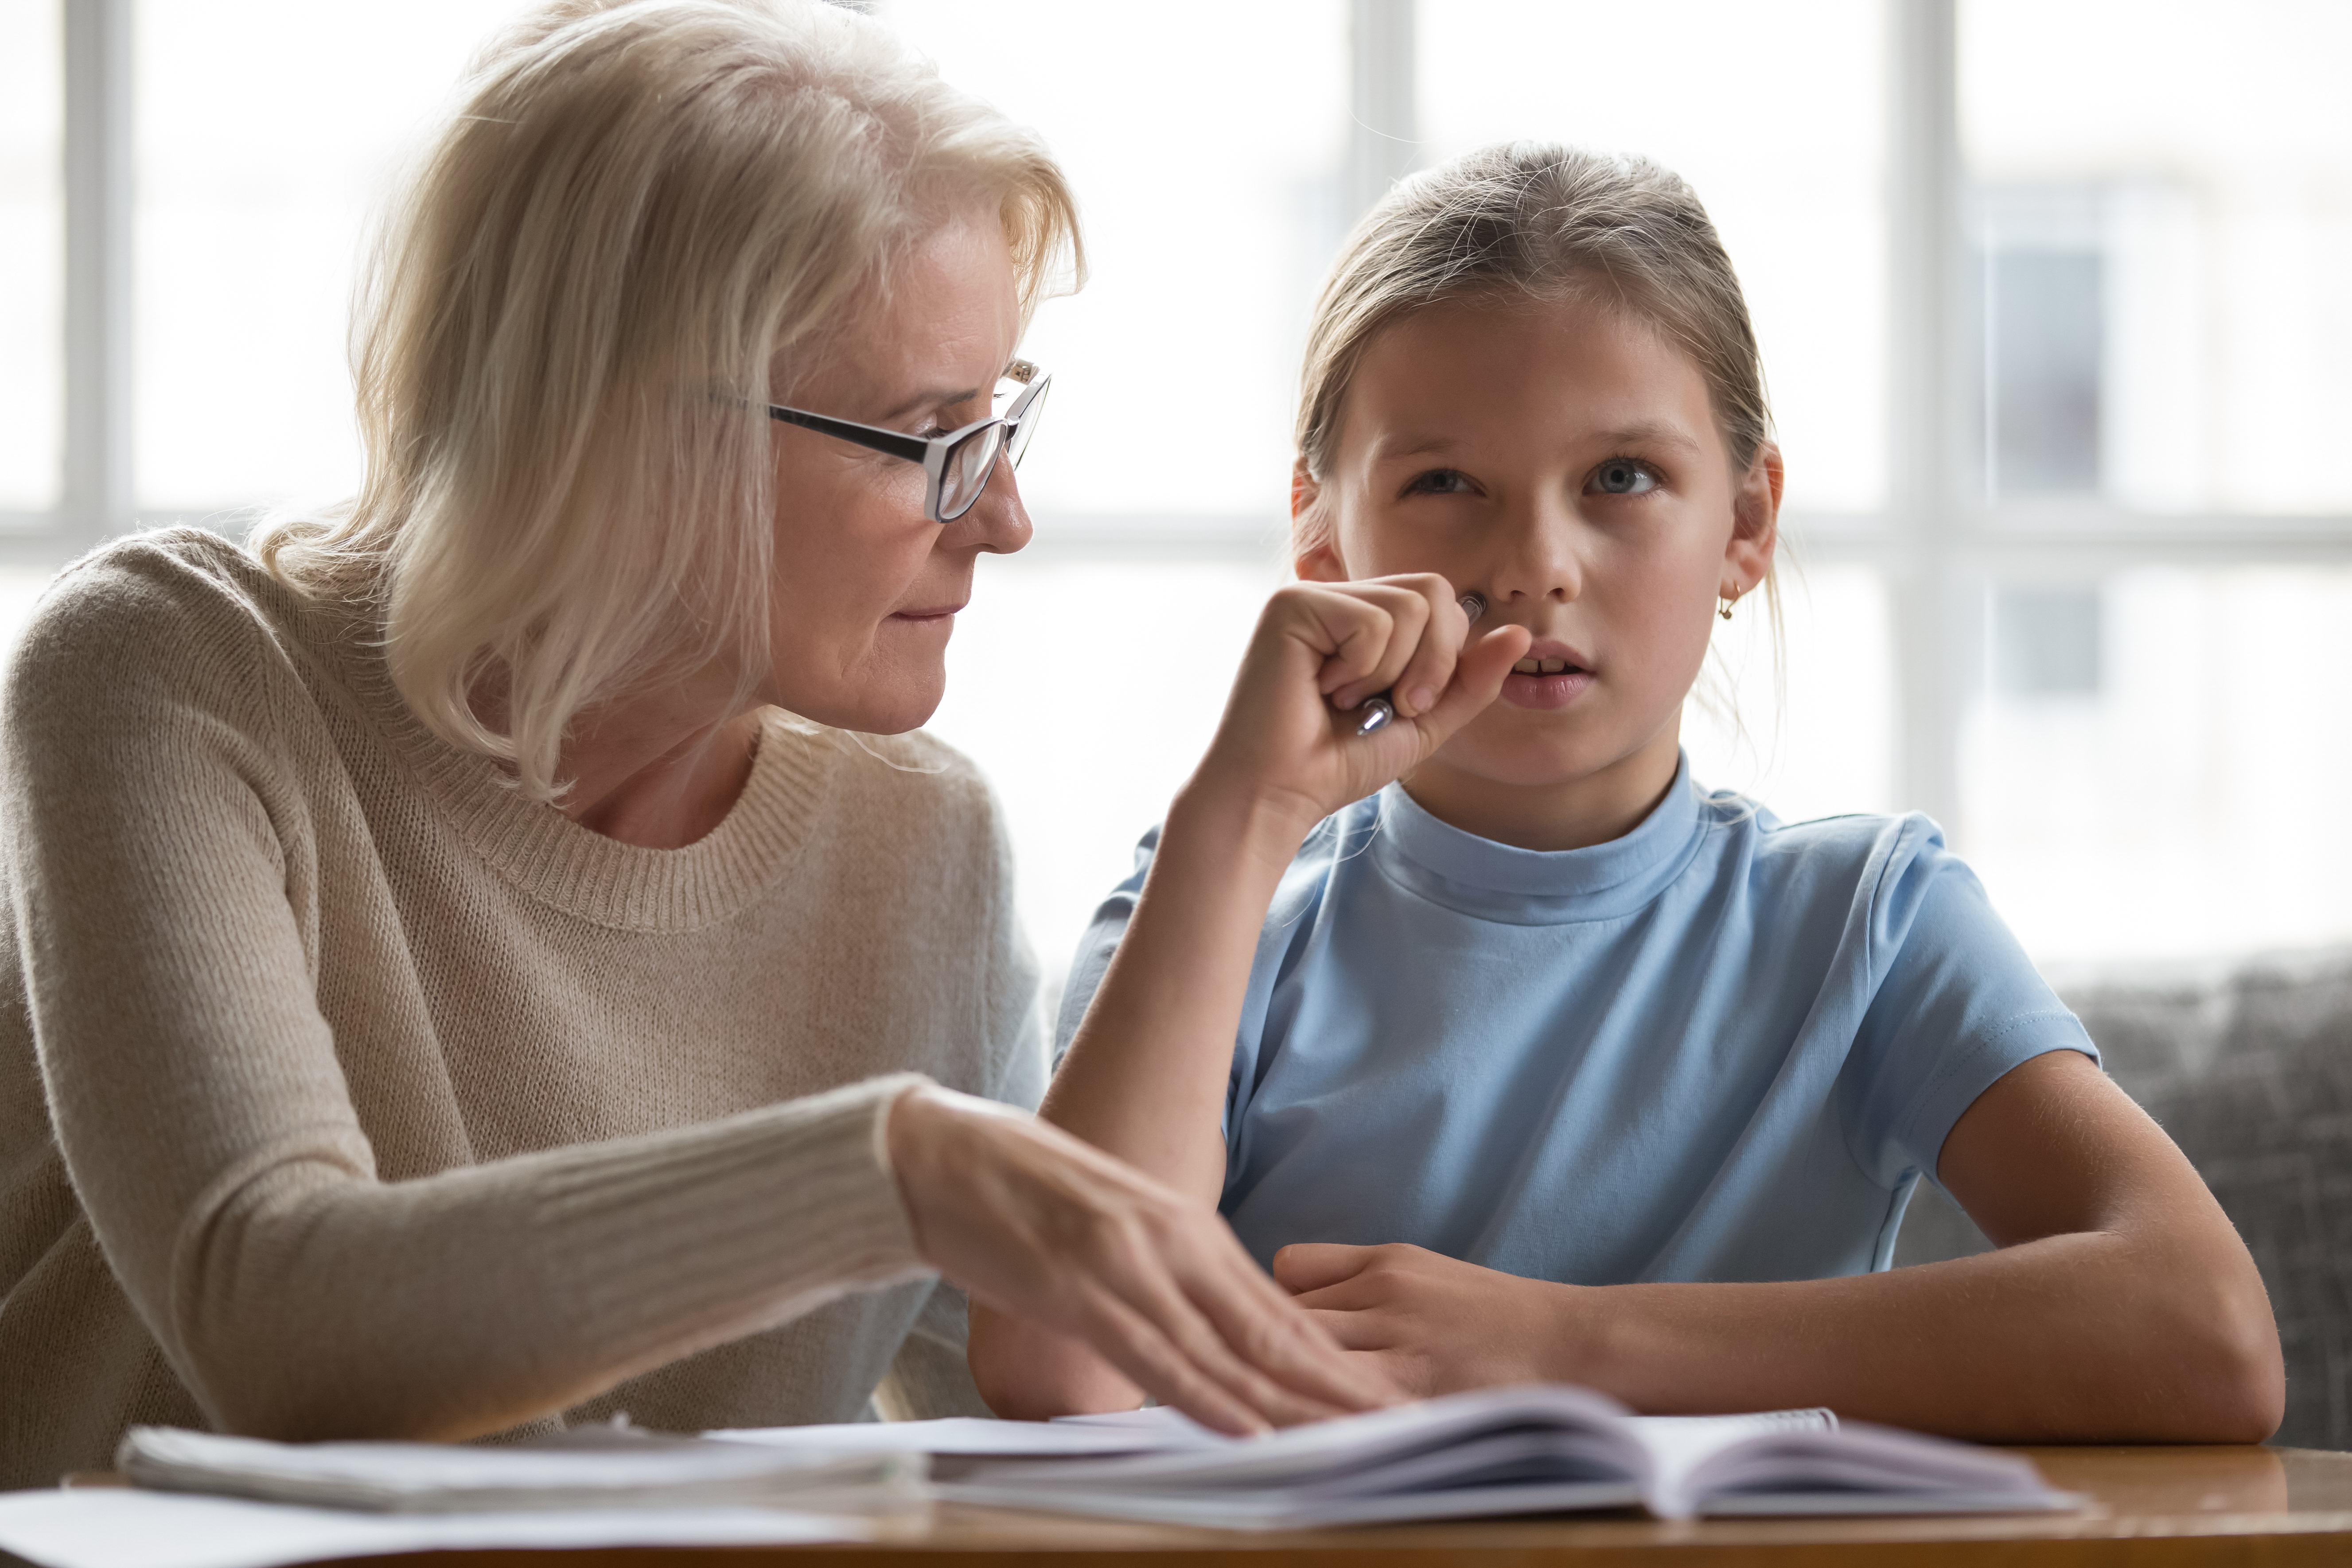 Une femme plus âgée enseigne à une jeune fille | Source : Shutterstock